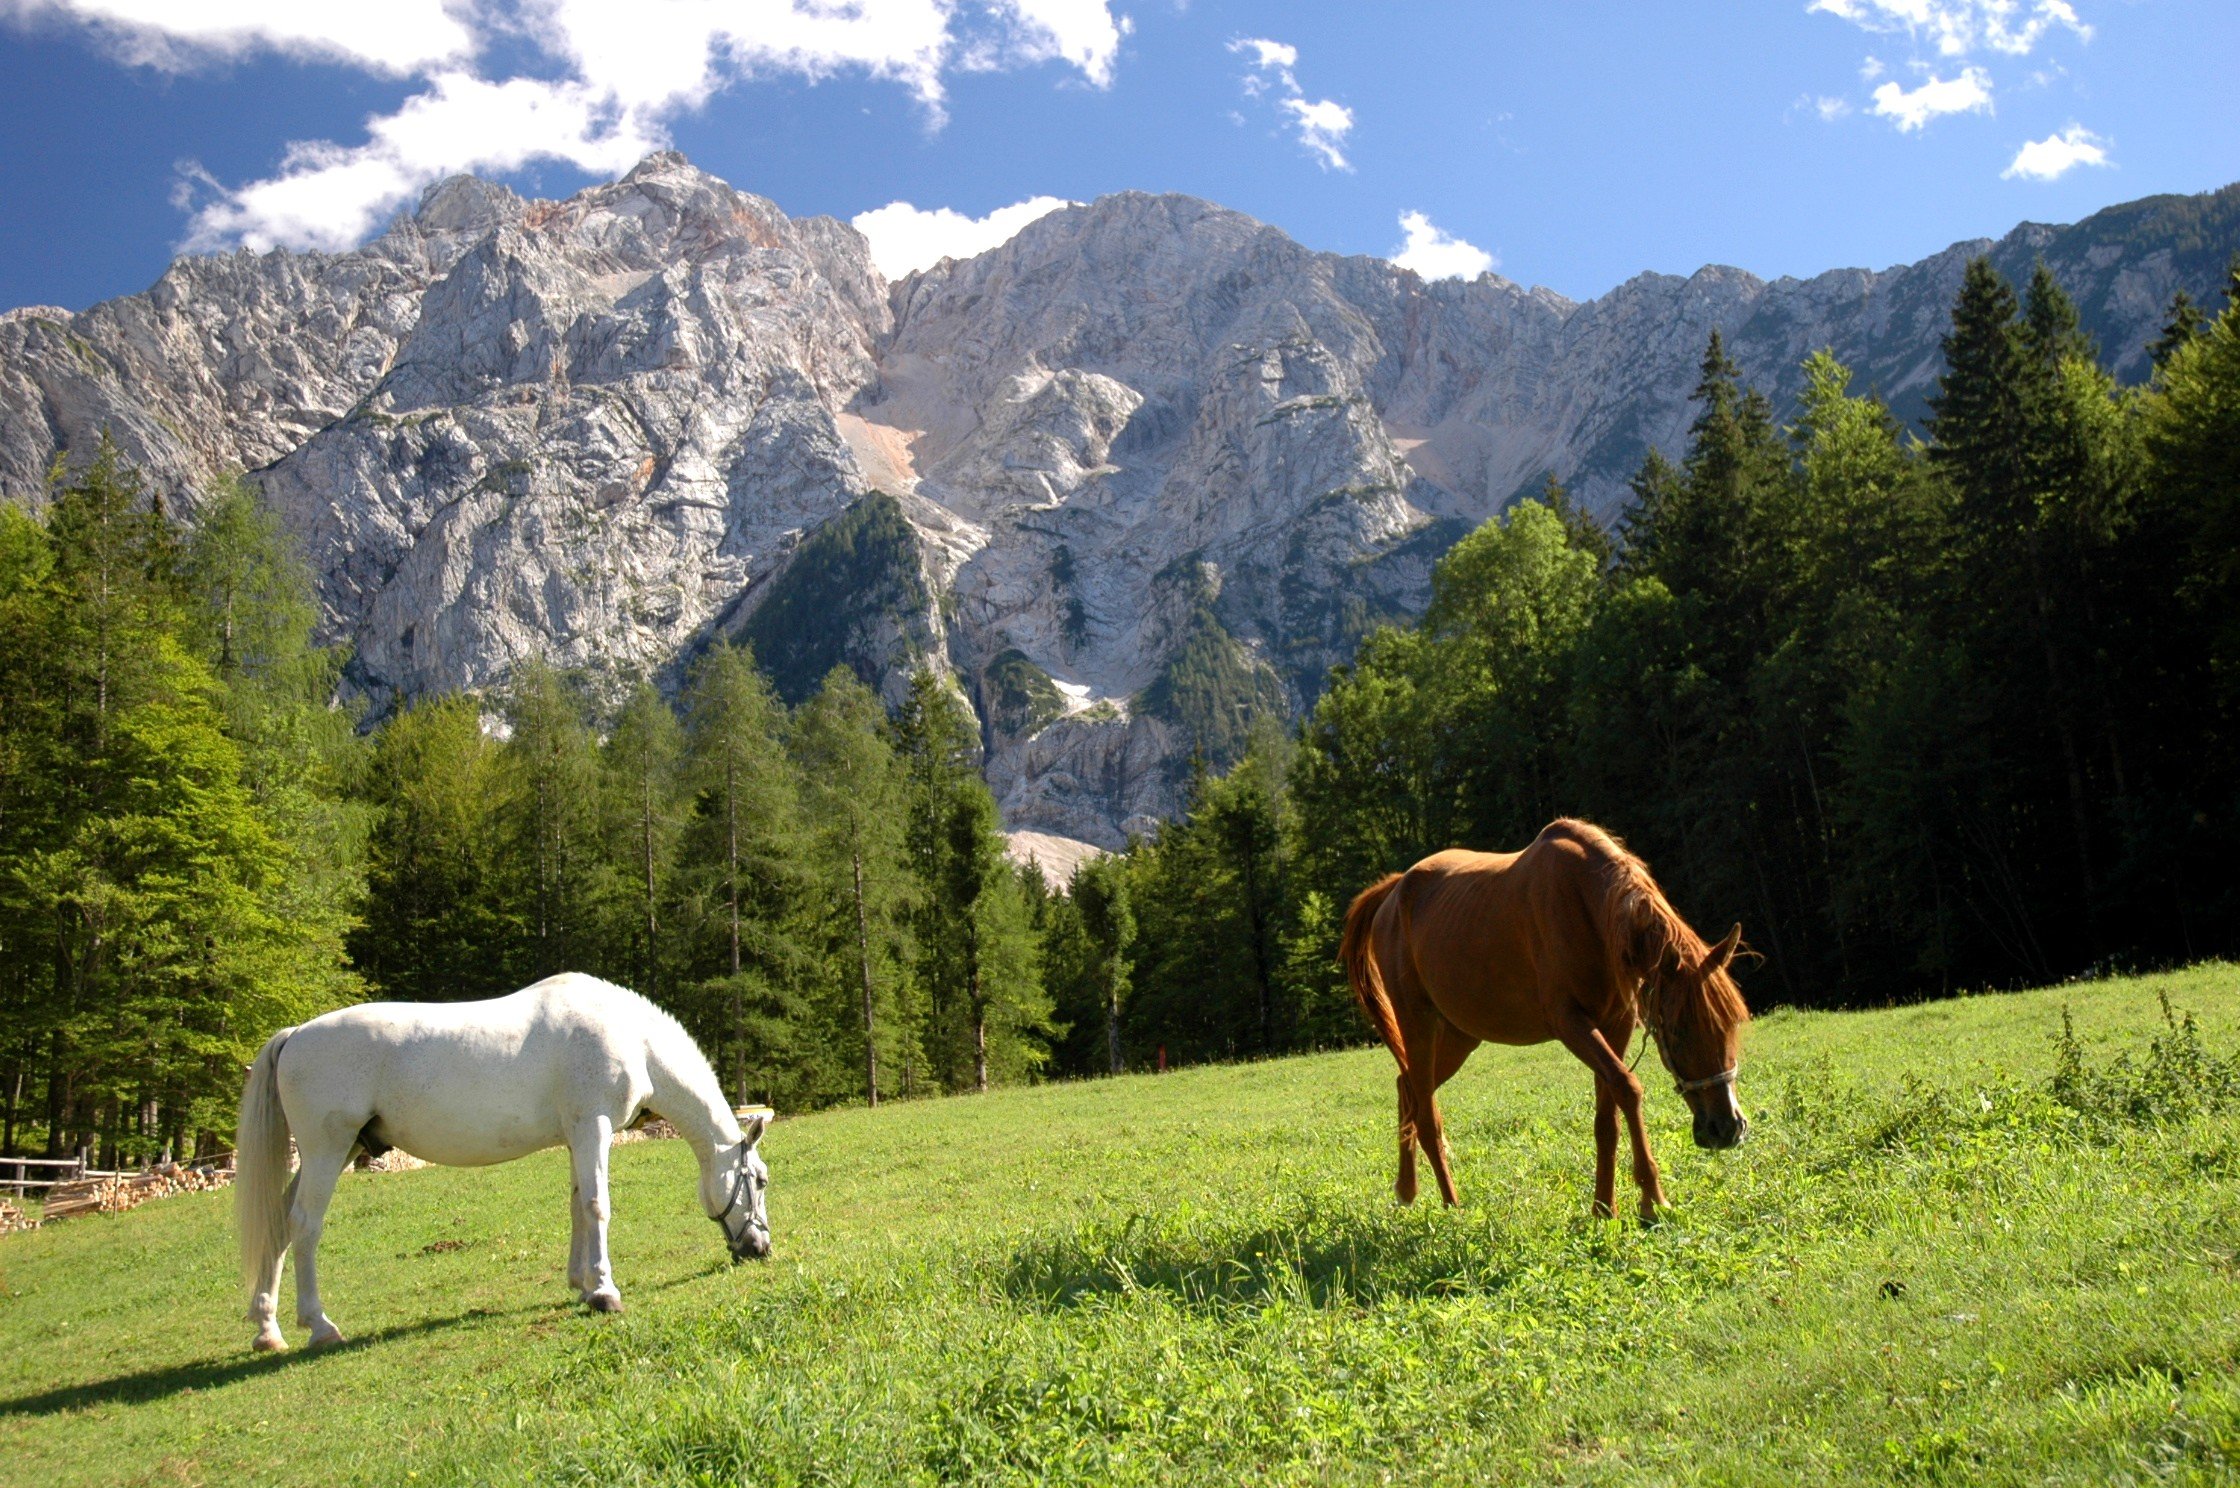 Хорс лейк. Природа Кыргызстана с лошадами. Лошади на природе. Лошади в горах. Пейзаж с лошадьми.